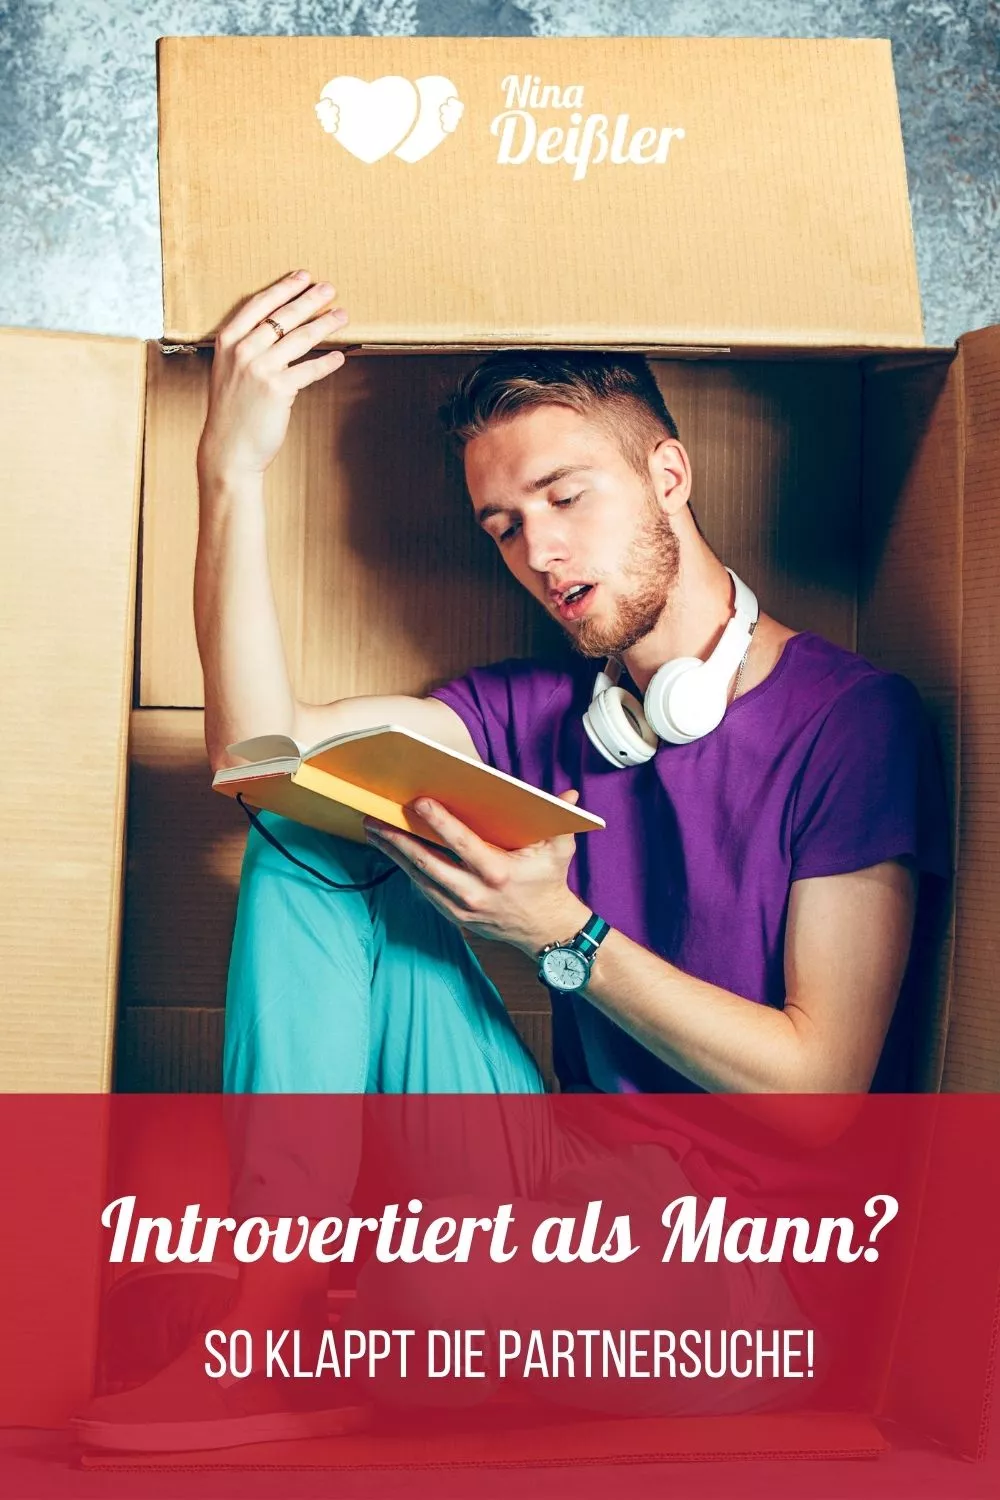 Introvertiert als Mann - so klappt Partnersuche - Nina Deissler